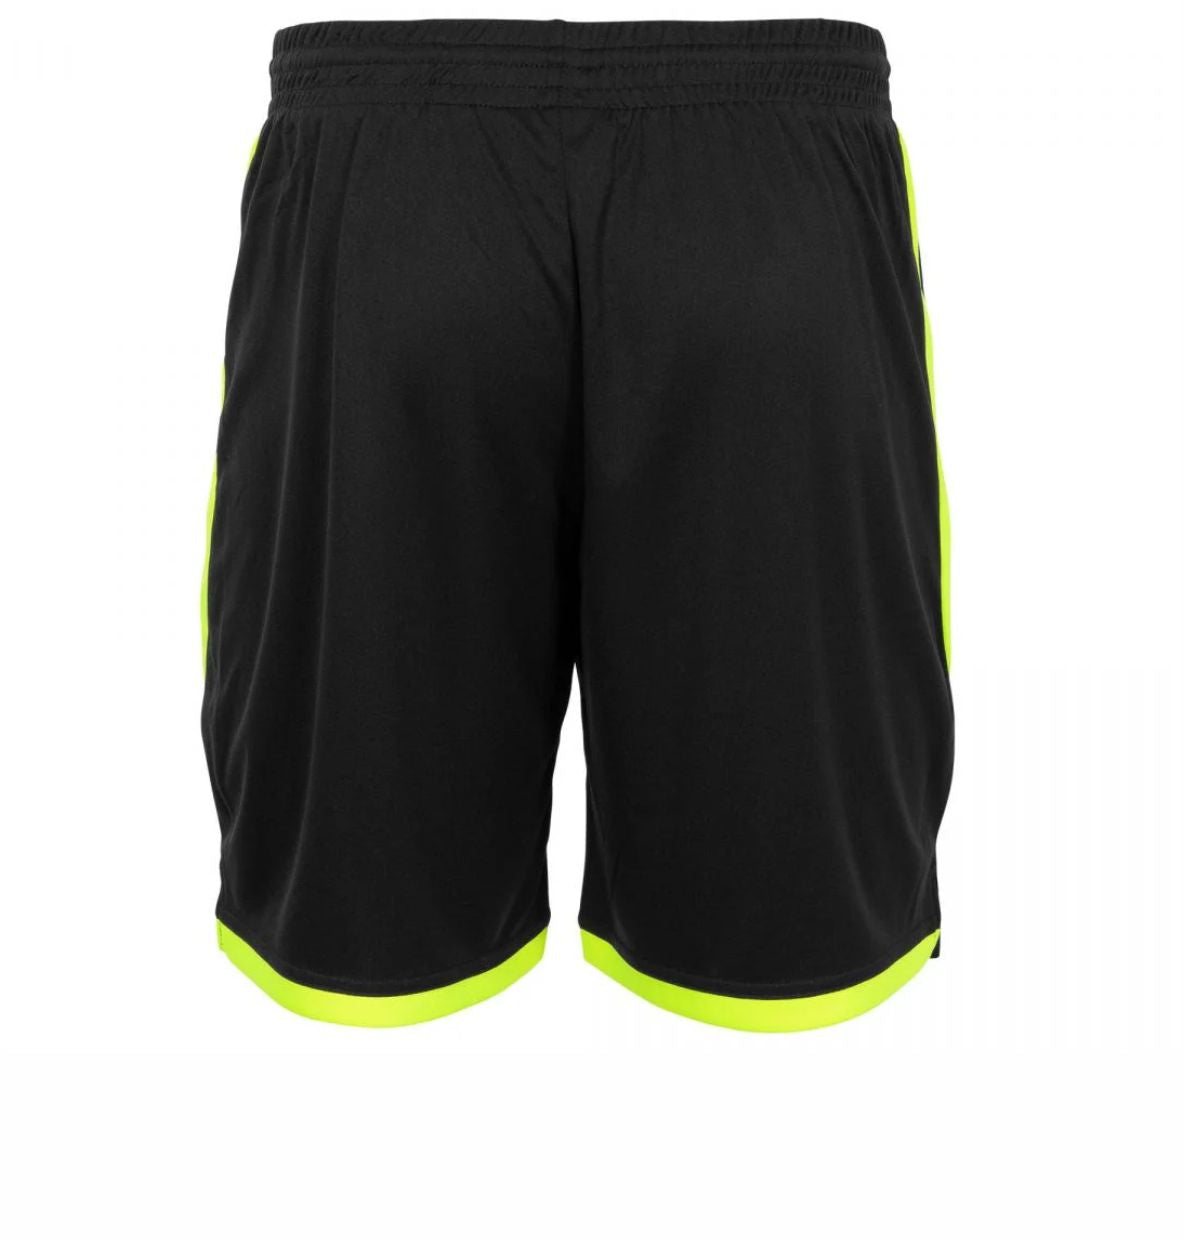 Stanno - Focus Shorts - Black & Neon Yellow - Junior